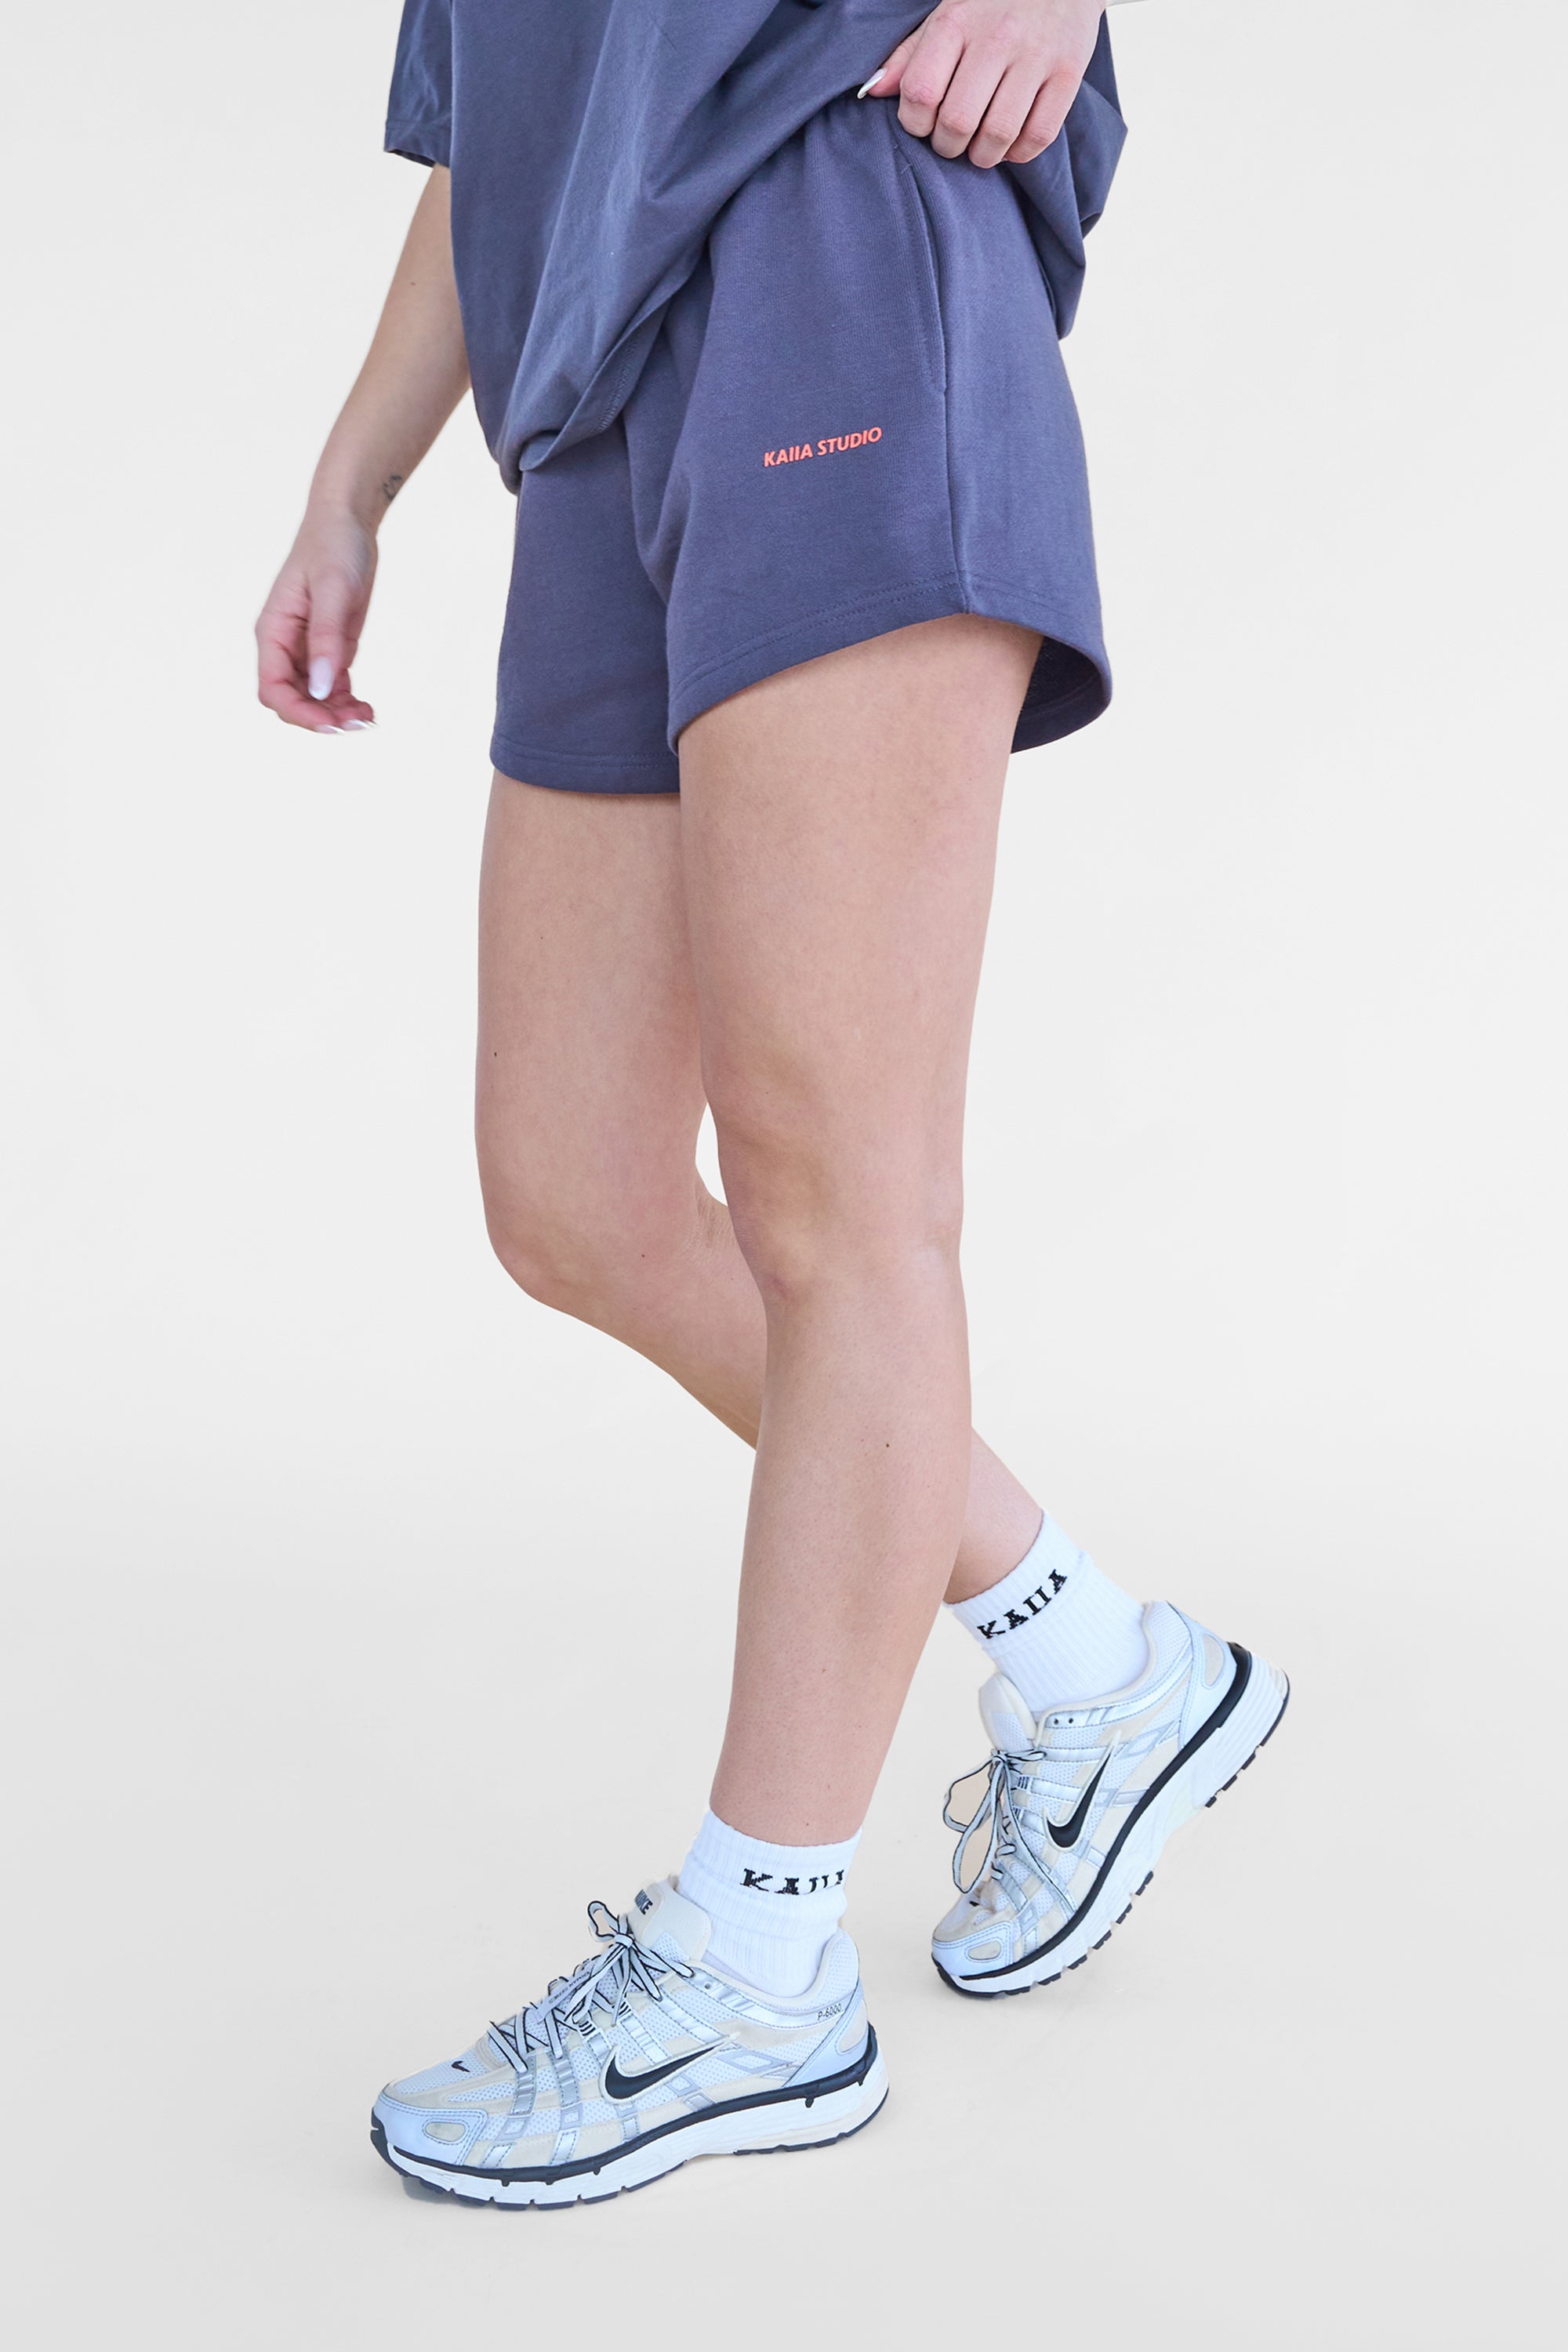 Kaiia Studio Mini Sweat Shorts Charcoal